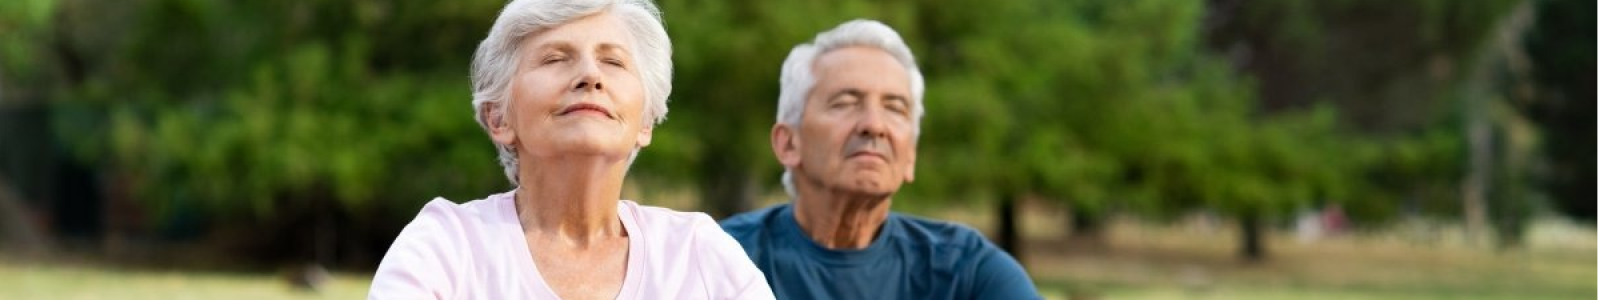 Пожилые люди за здоровый образ жизни